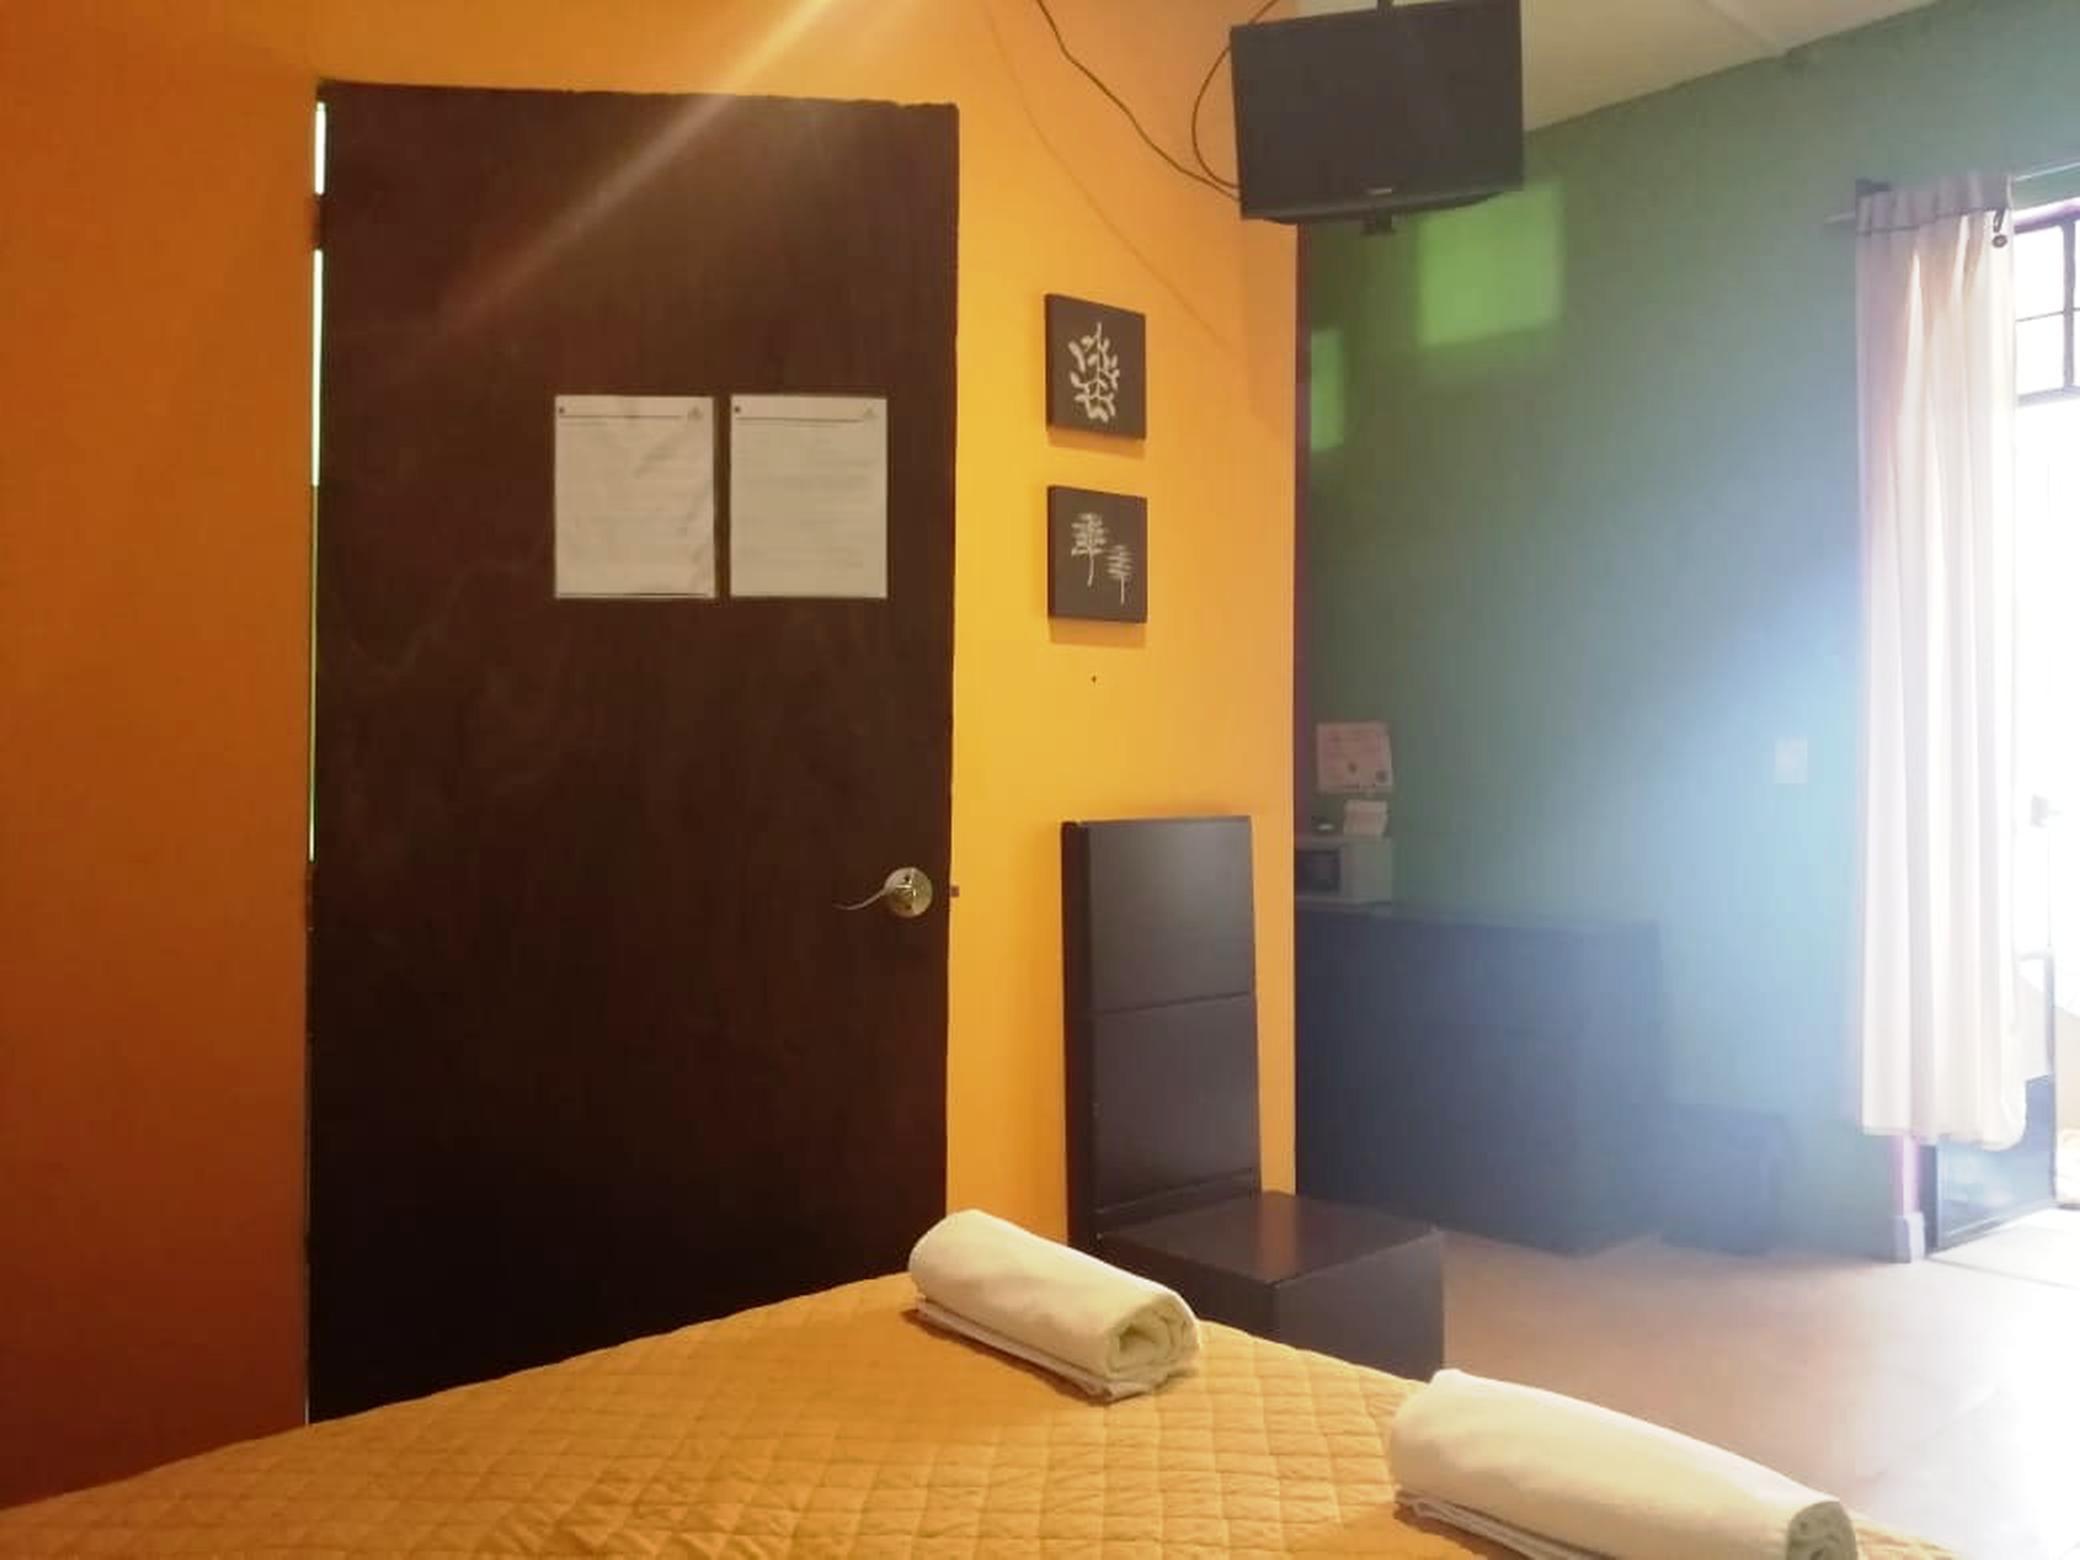 Hotel Amigo Suites Мехико Экстерьер фото